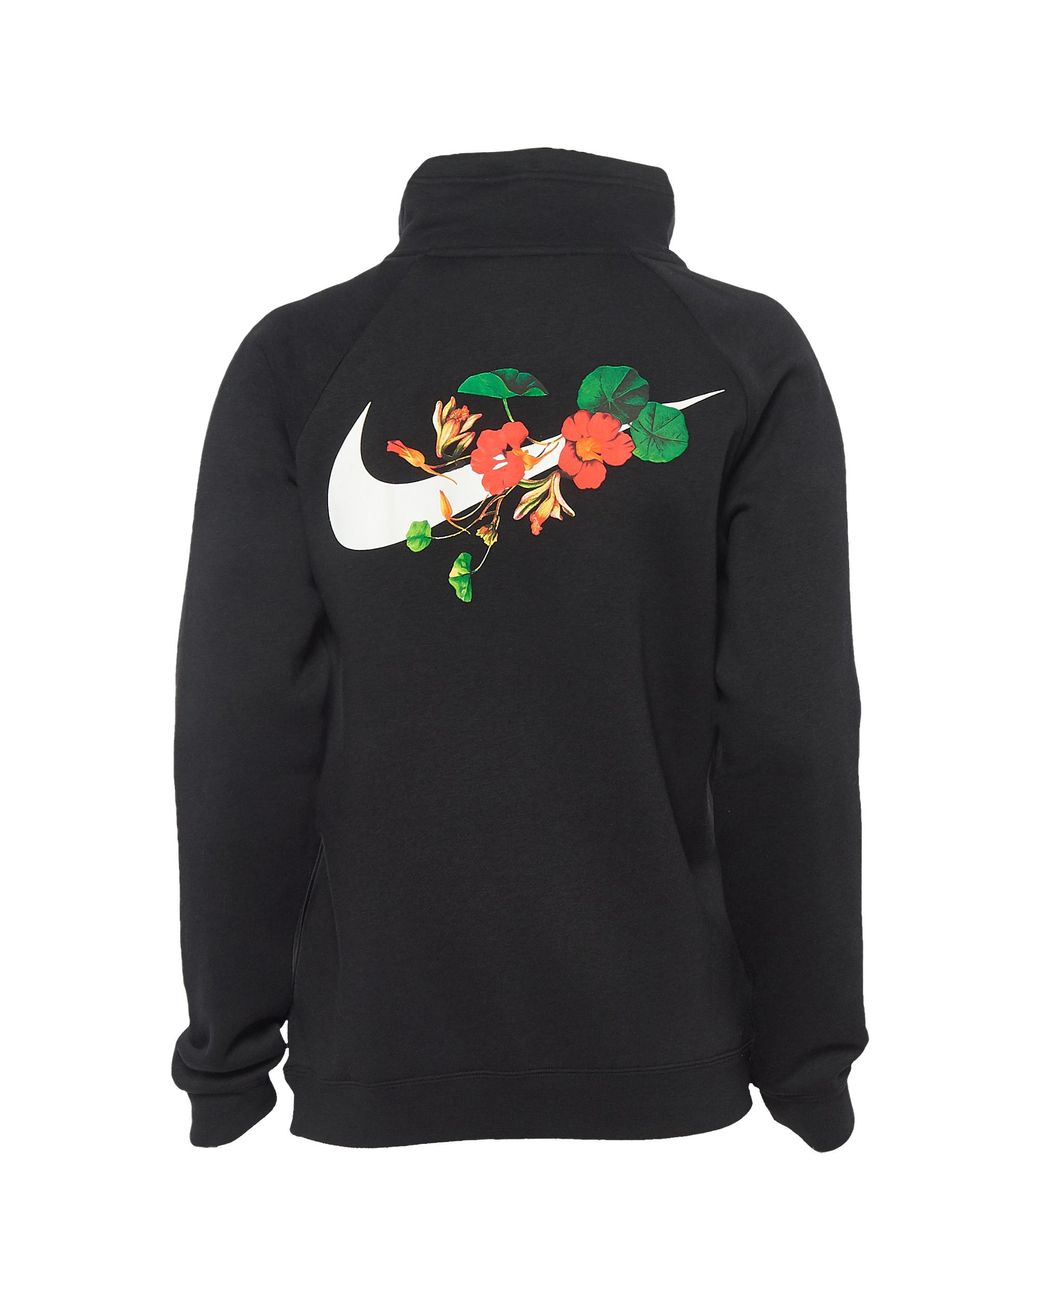 Nike Fleece Ultra Femme 1/2 Zip Hoodie Sweatshirt in Black/White Floral  (Black) | Lyst